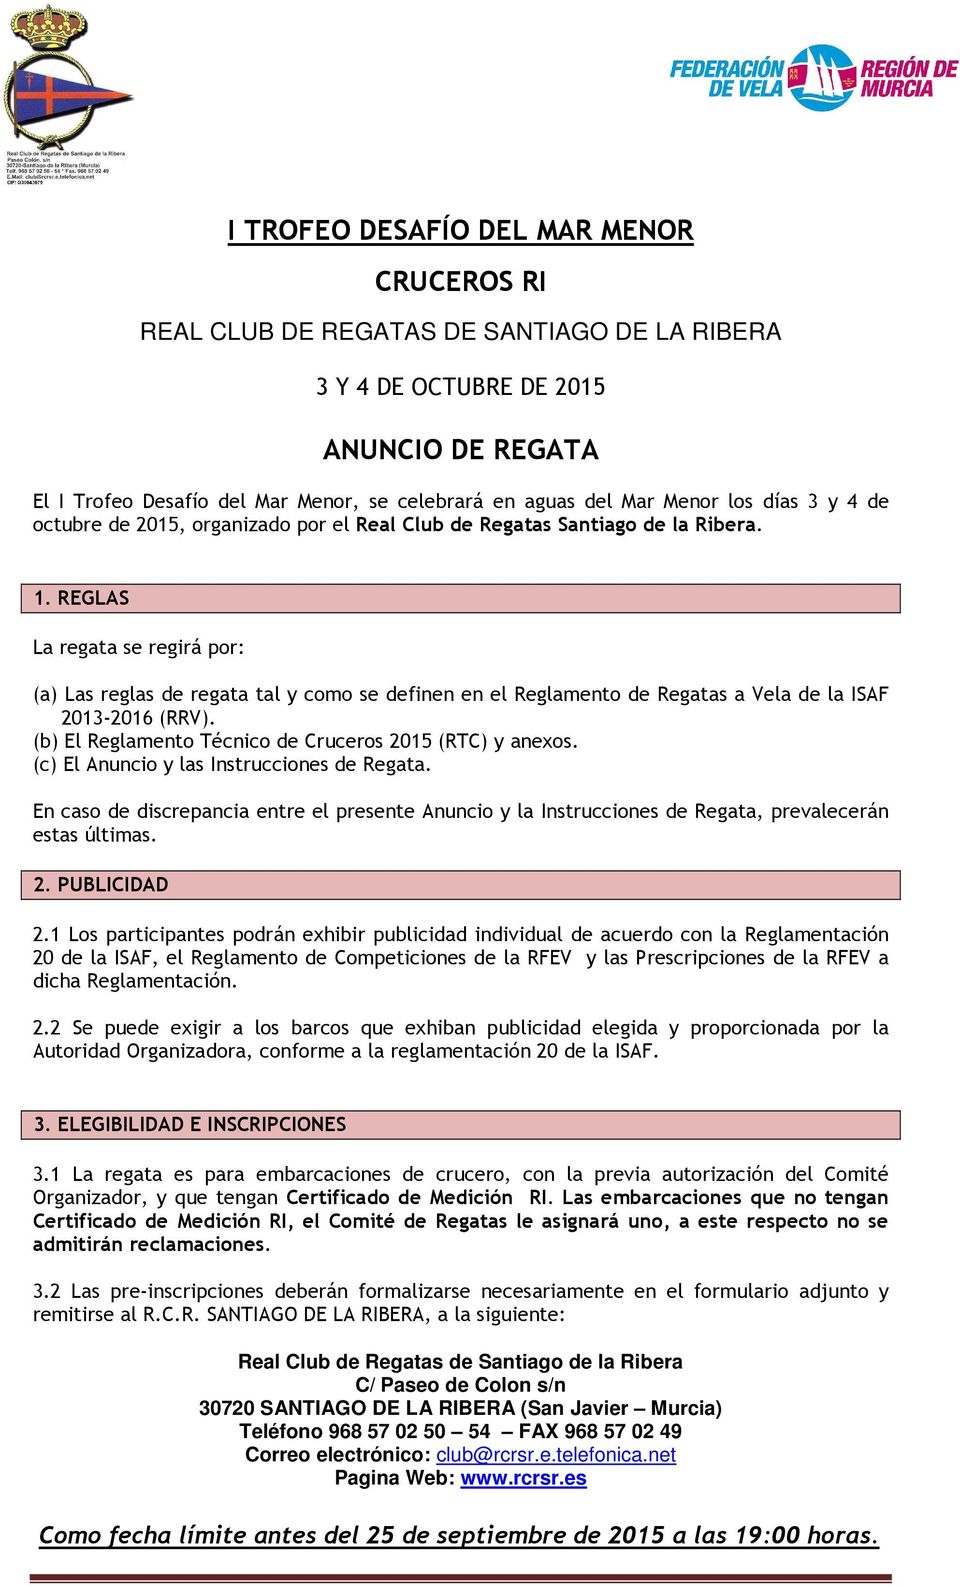 REGLAS La regata se regirá por: (a) Las reglas de regata tal y como se definen en el Reglamento de Regatas a Vela de la ISAF 2013-2016 (RRV). (b) El Reglamento Técnico de Cruceros 2015 (RTC) y anexos.